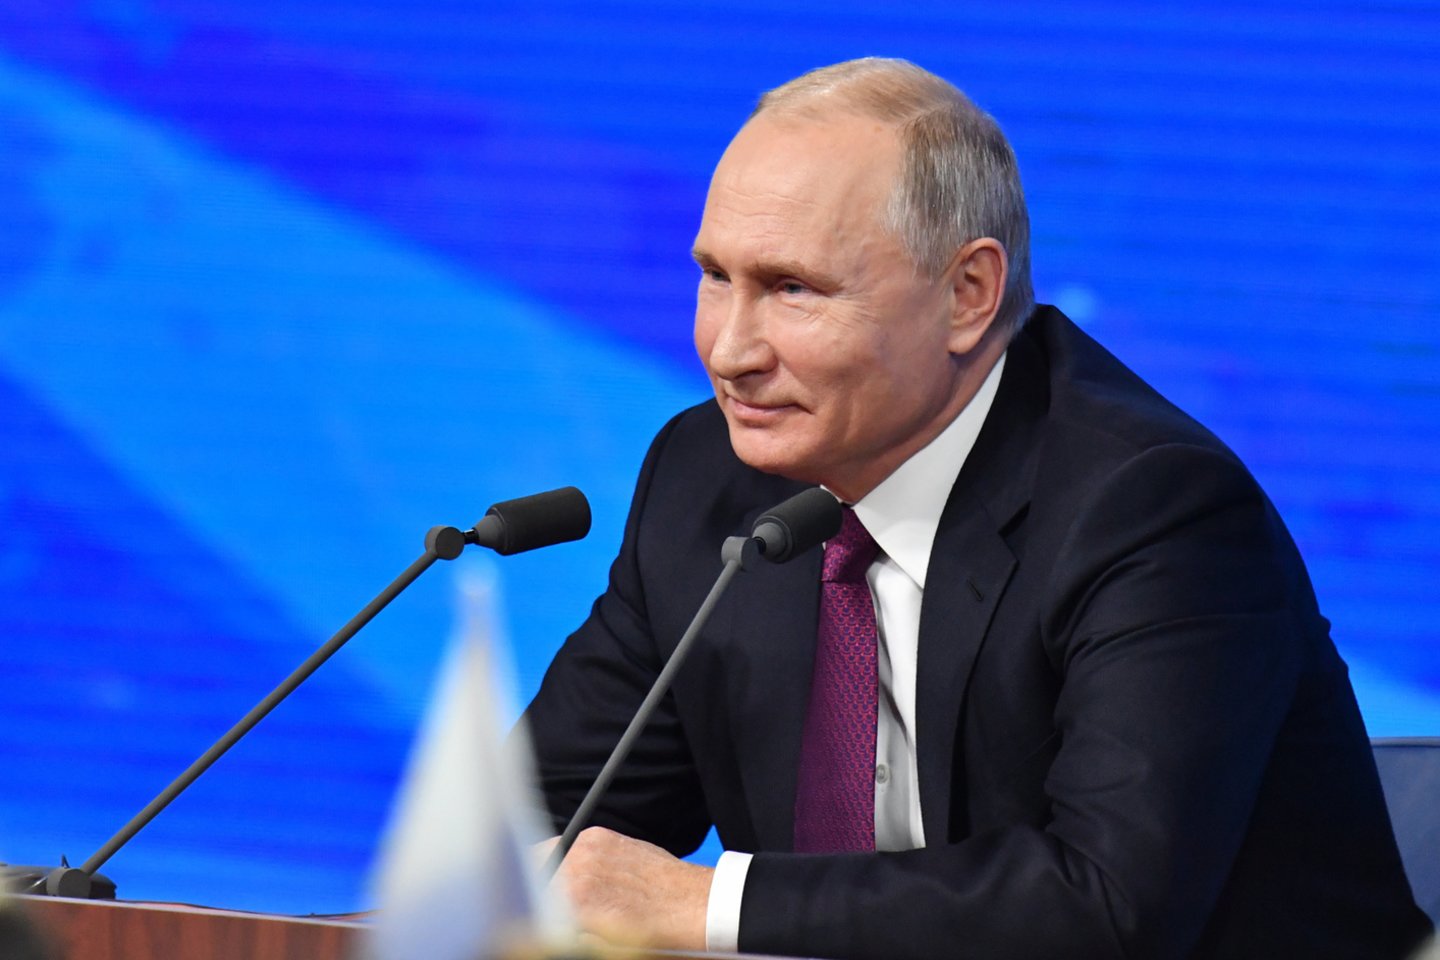  V.Putinas atsakinėjo į žurnalistų klausimus. <br> Sputnik/Scanpix nuotr.